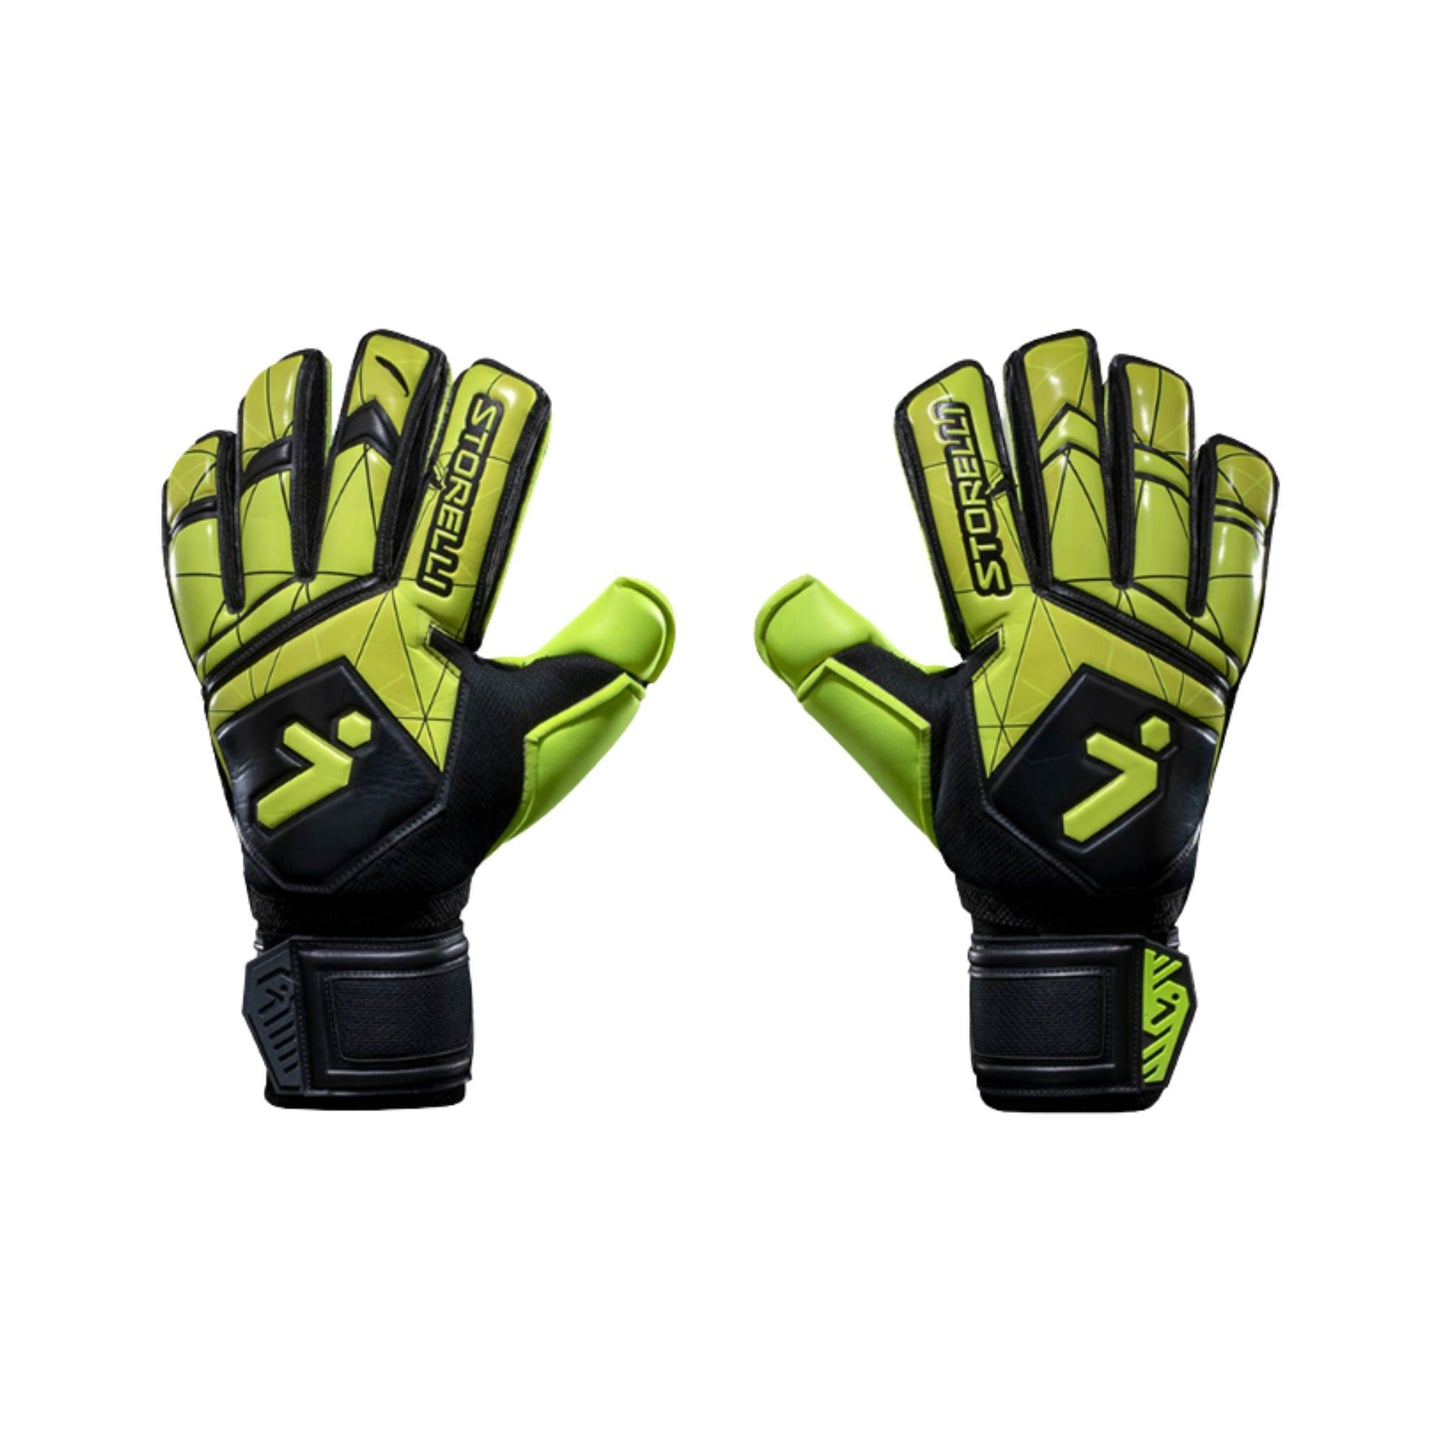 Goalkeeper Gloves - Gladiator Recruit v3 by Storelli Goalkeeper gloves ITASPORT 